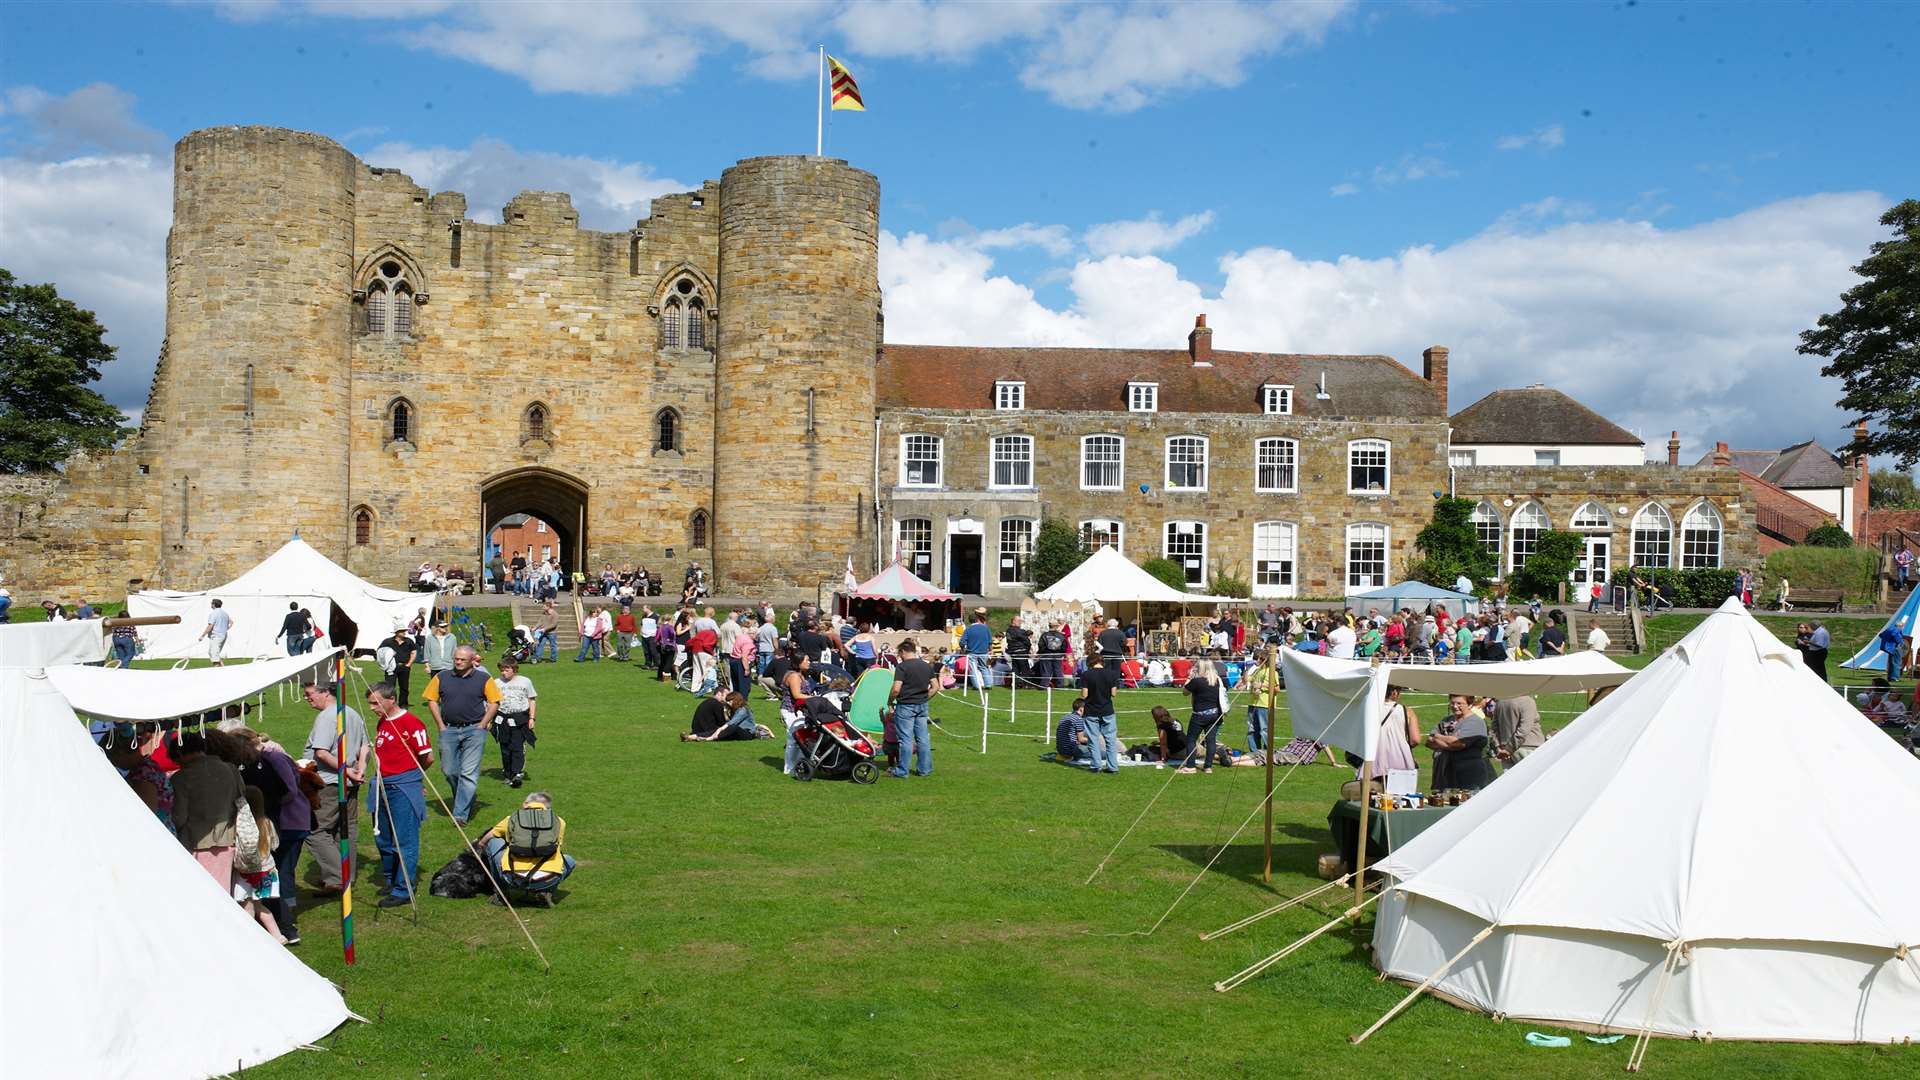 The medieval fair at Tonbridge Castle